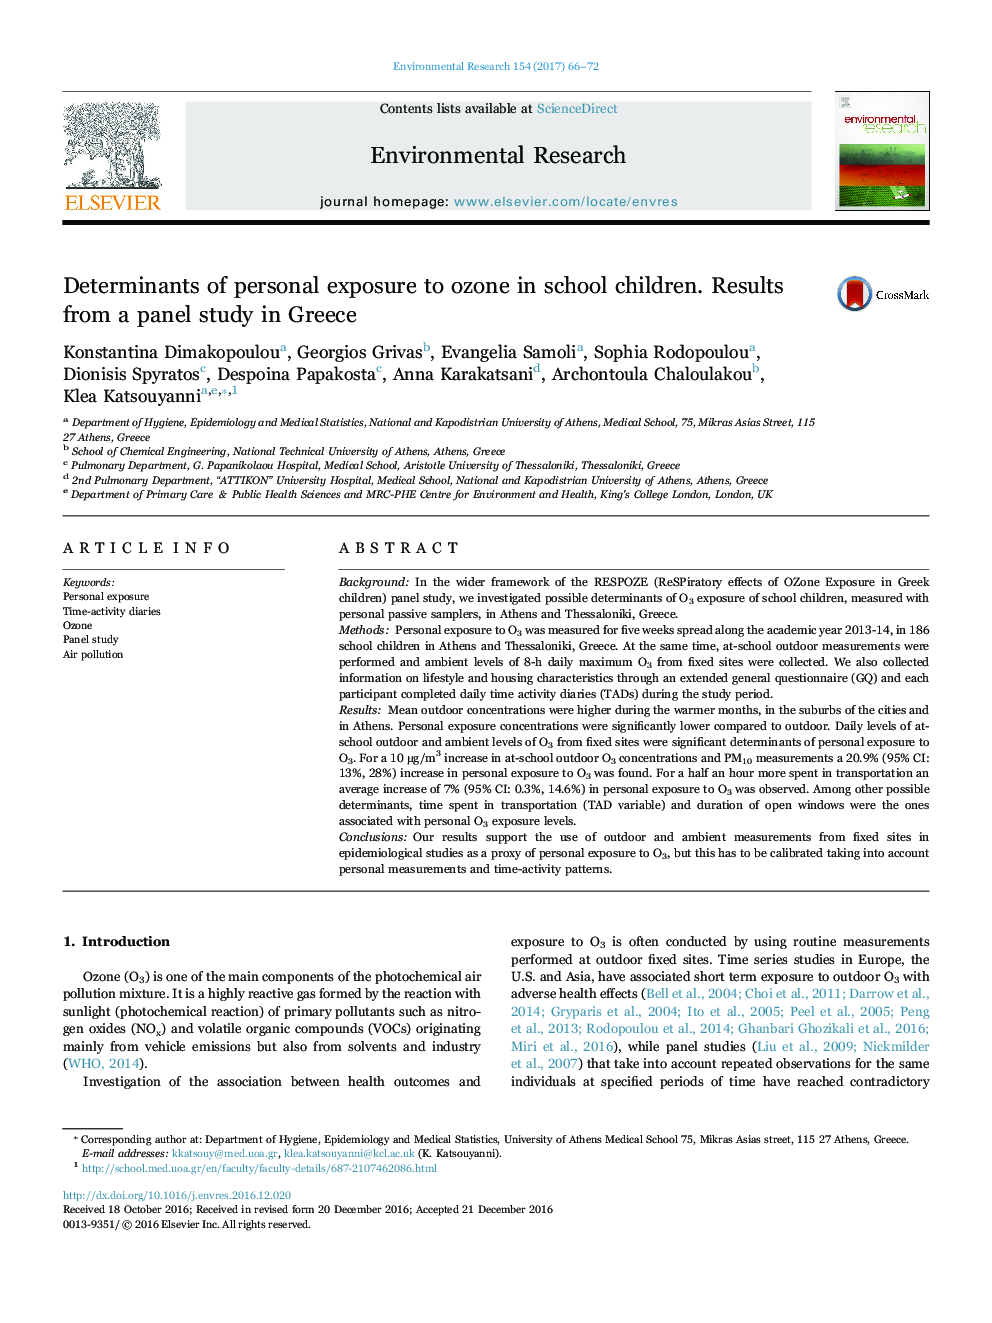 عوامل تعیین کننده از قرار گرفتن در معرض ازن در کودکان مدرسه. نتایج یک مطالعه پانل در یونان 